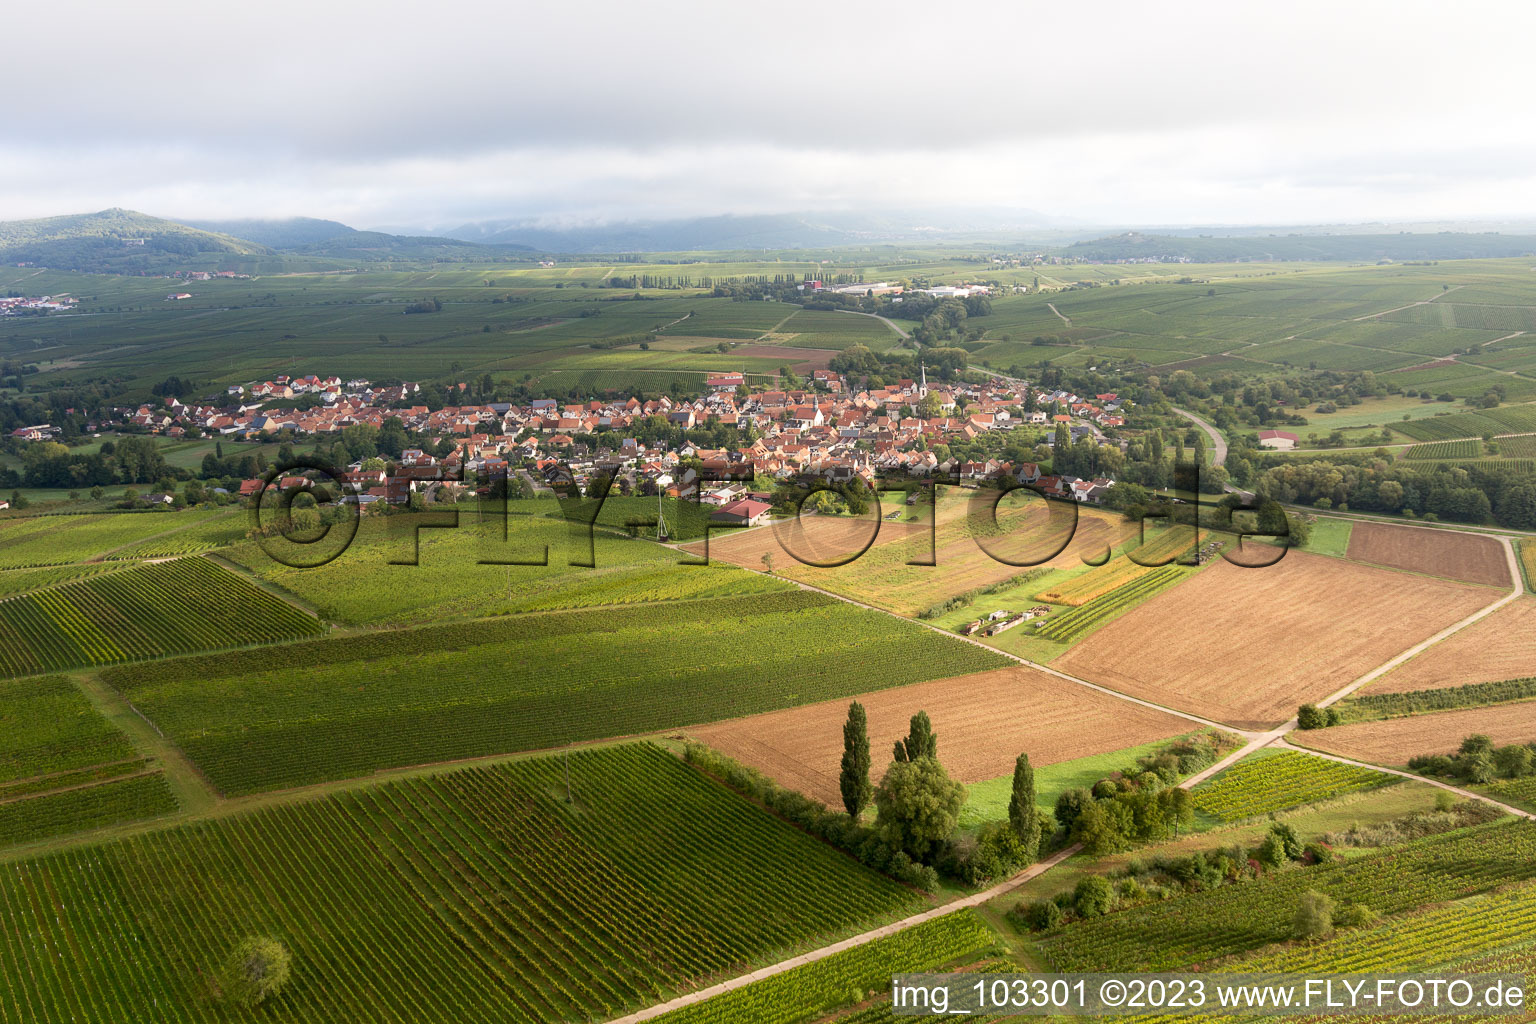 Göcklingen im Bundesland Rheinland-Pfalz, Deutschland aus der Luft betrachtet